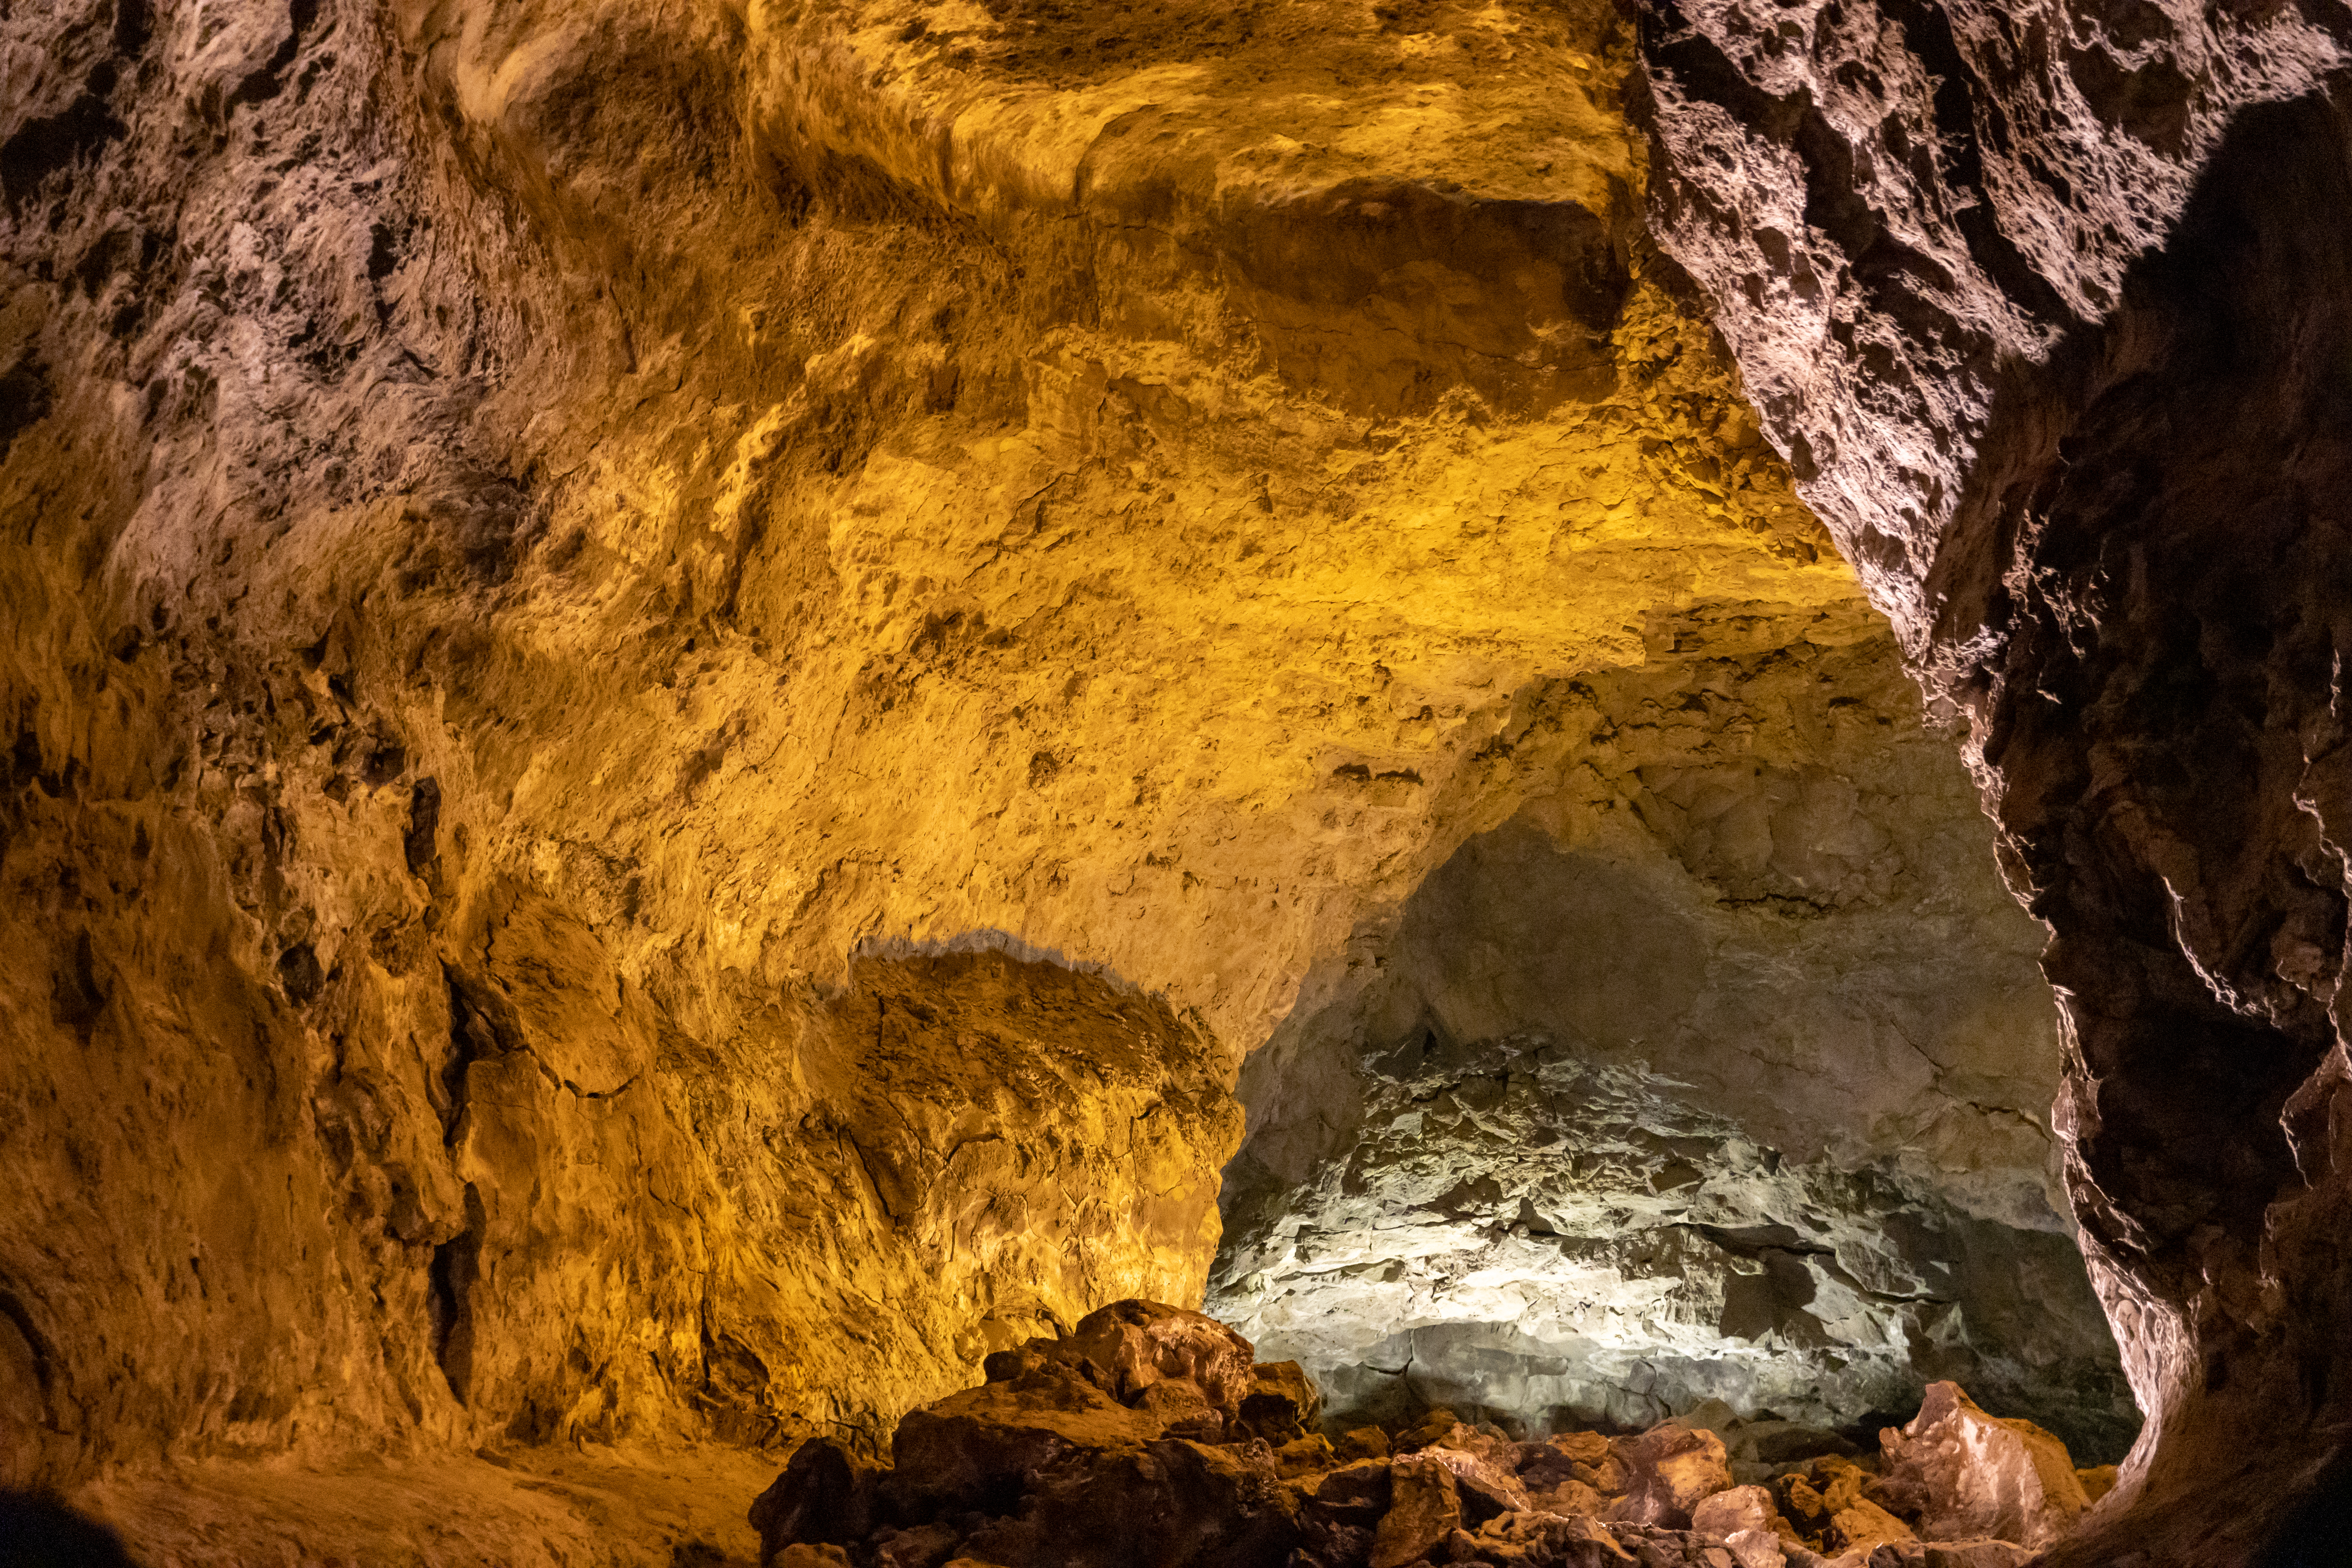 La cueva de doña petra